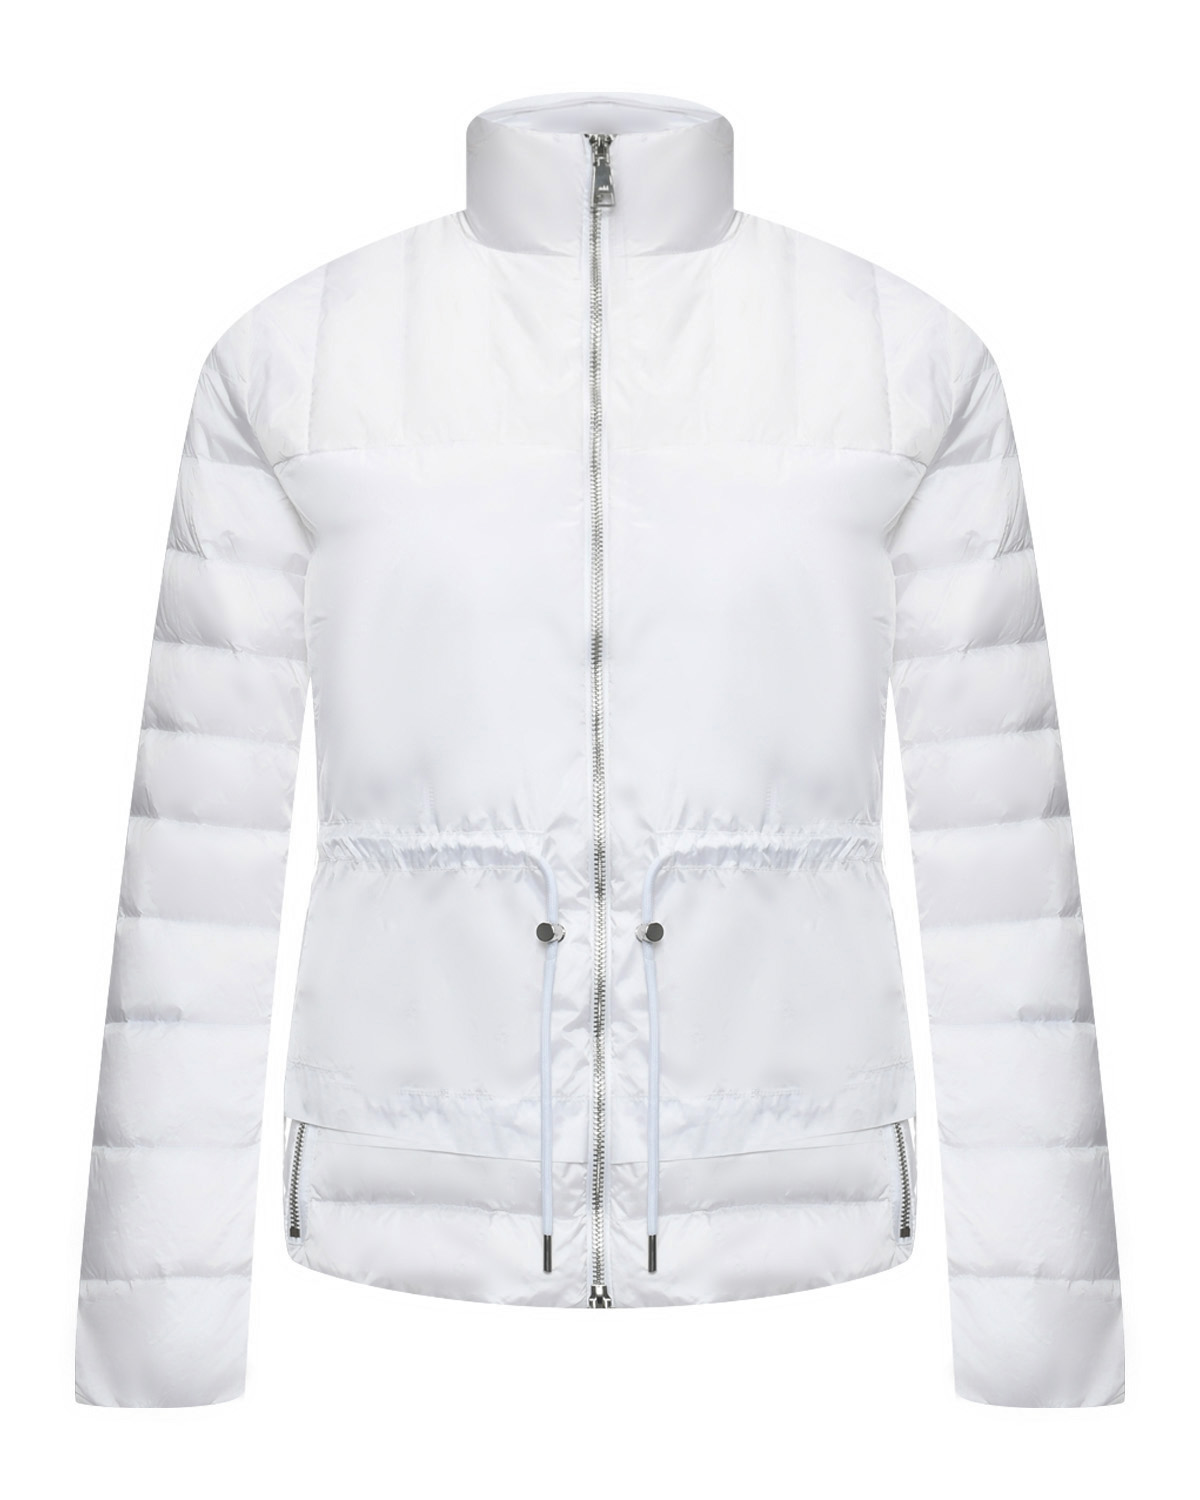 Куртка с кулиской на талии, белая ADD, размер 42, цвет белый - фото 1